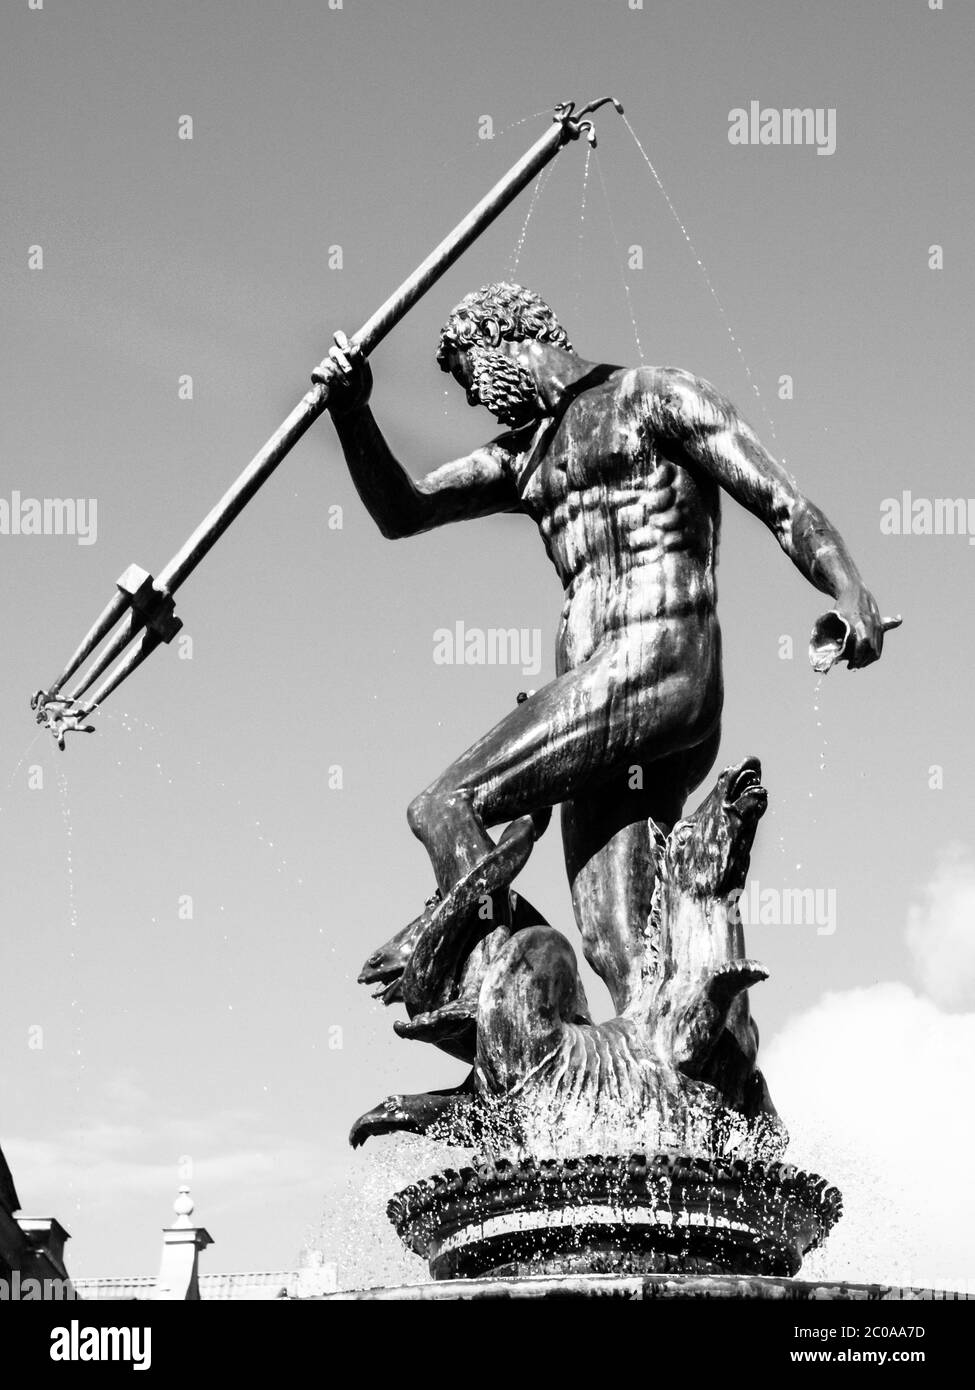 Bronzestatue von Neptun, dem römischen Gott des Meeres, in der Altstadt von Danzig, Polen. Schwarzweiß-Bild. Stockfoto